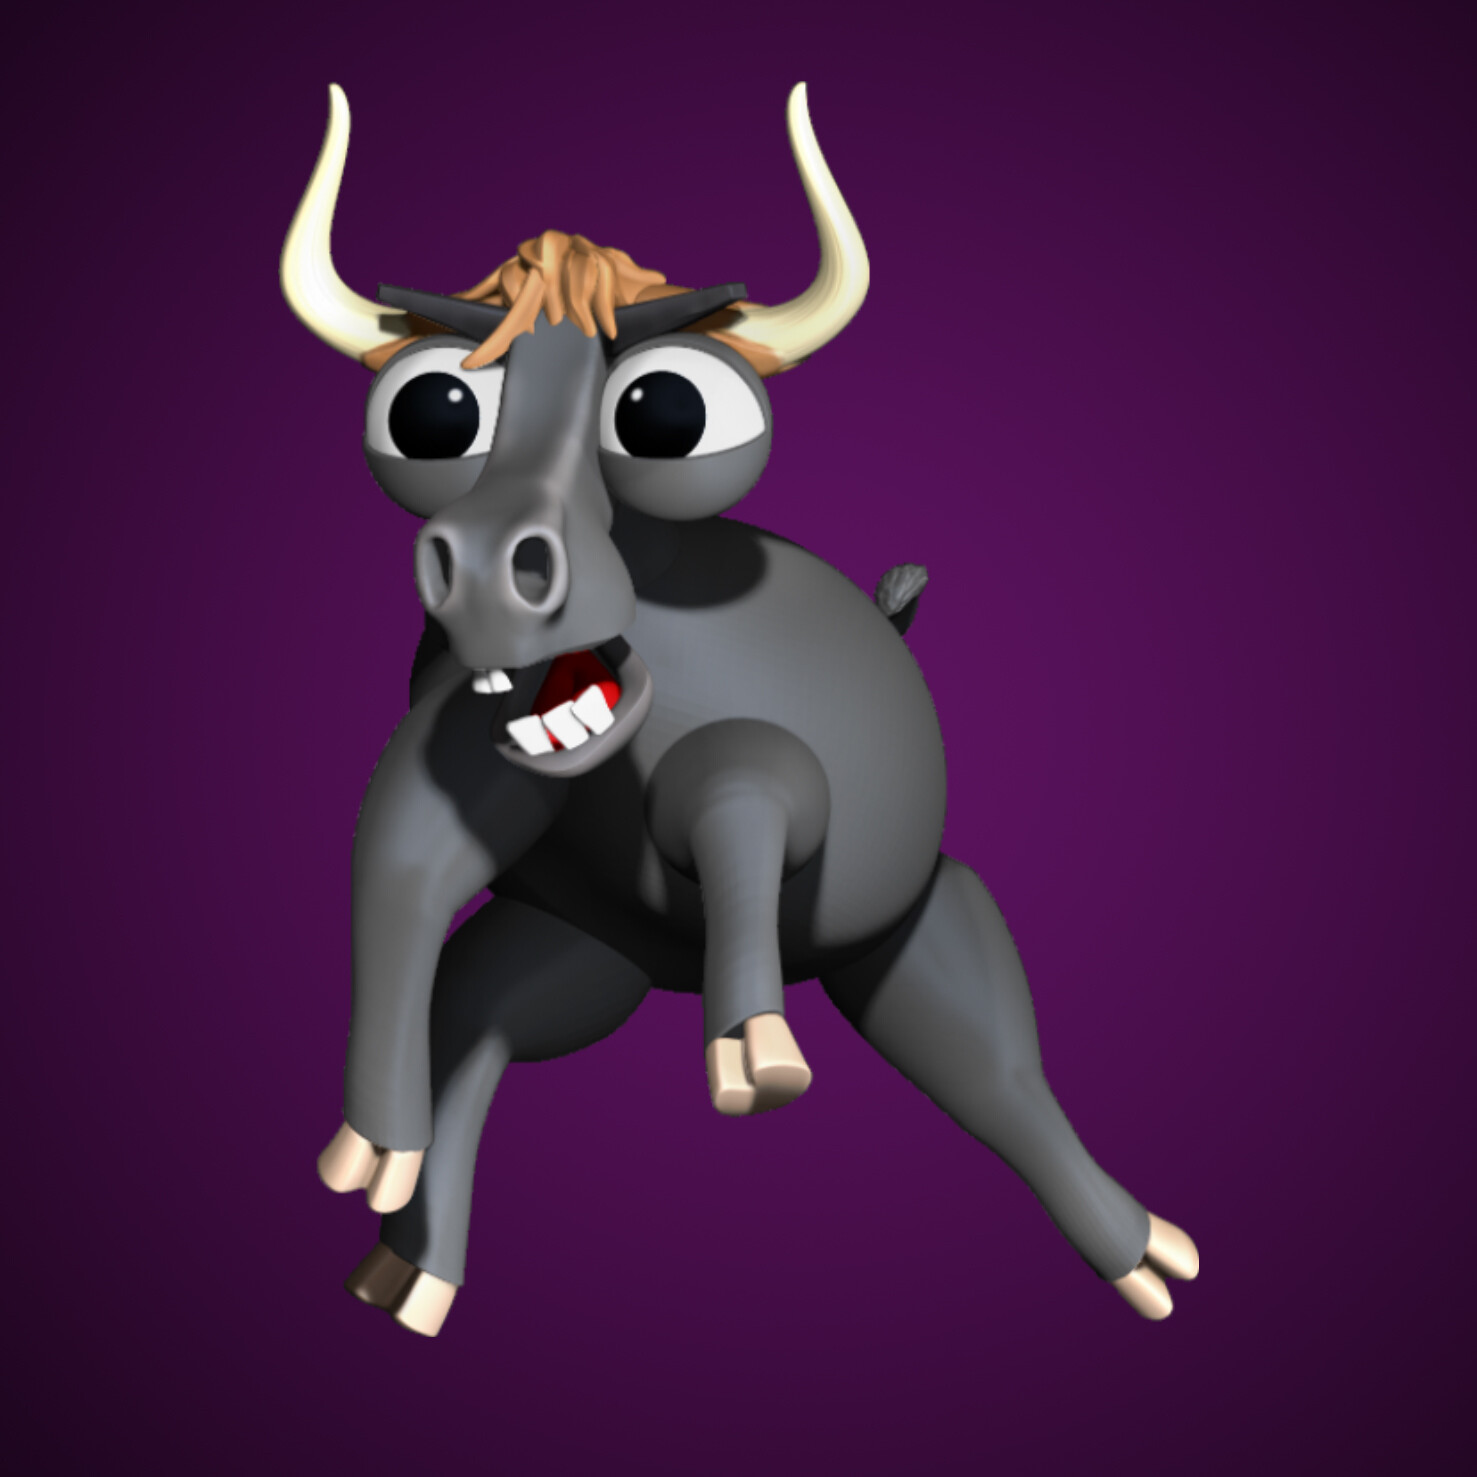 ArtStation - Cartoon bull